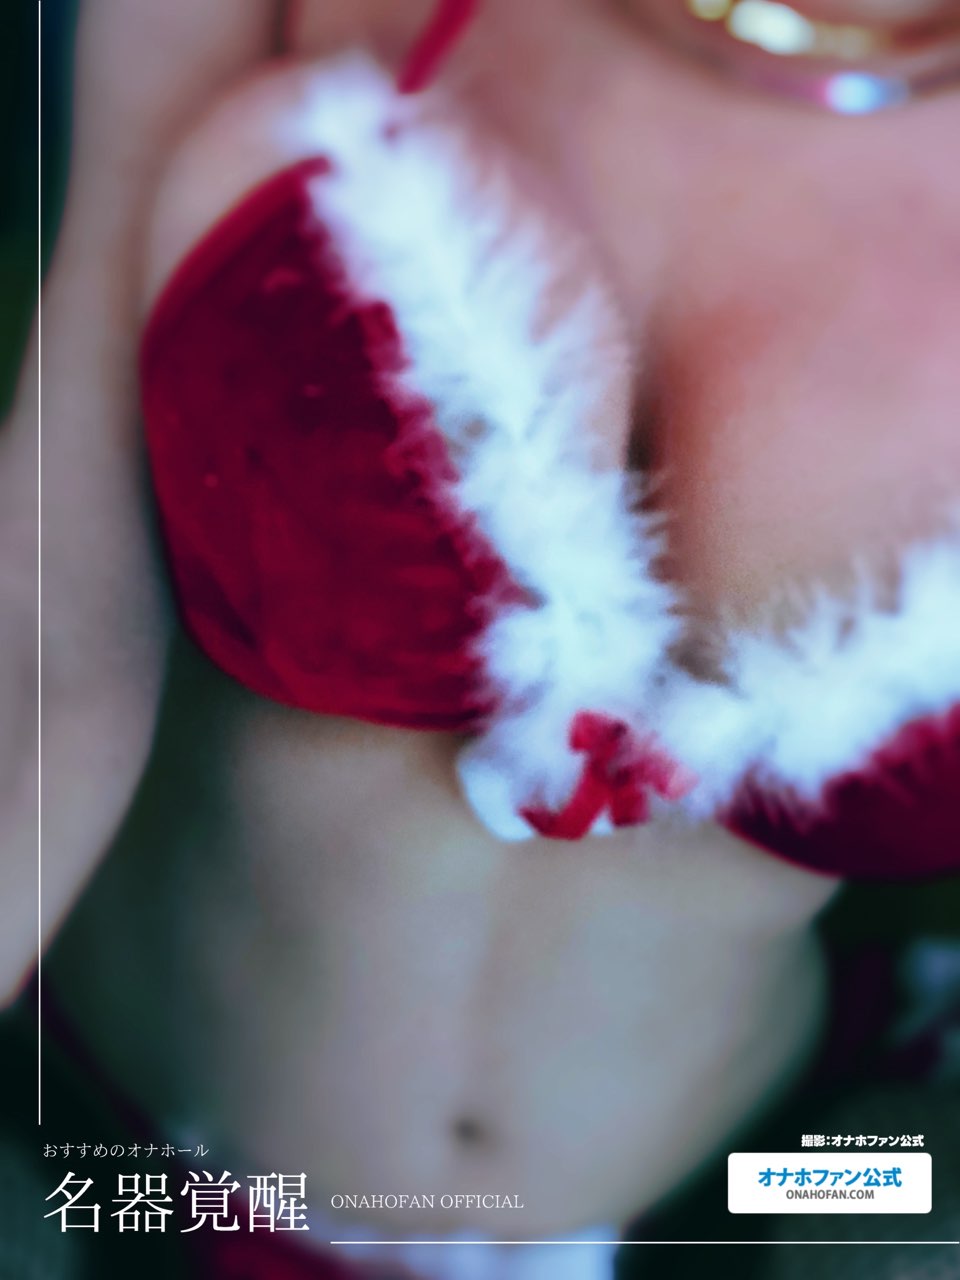 クリスマスコスでハンドオナホの『名器覚醒』をラブドールに装着して着衣セックスしてみた22